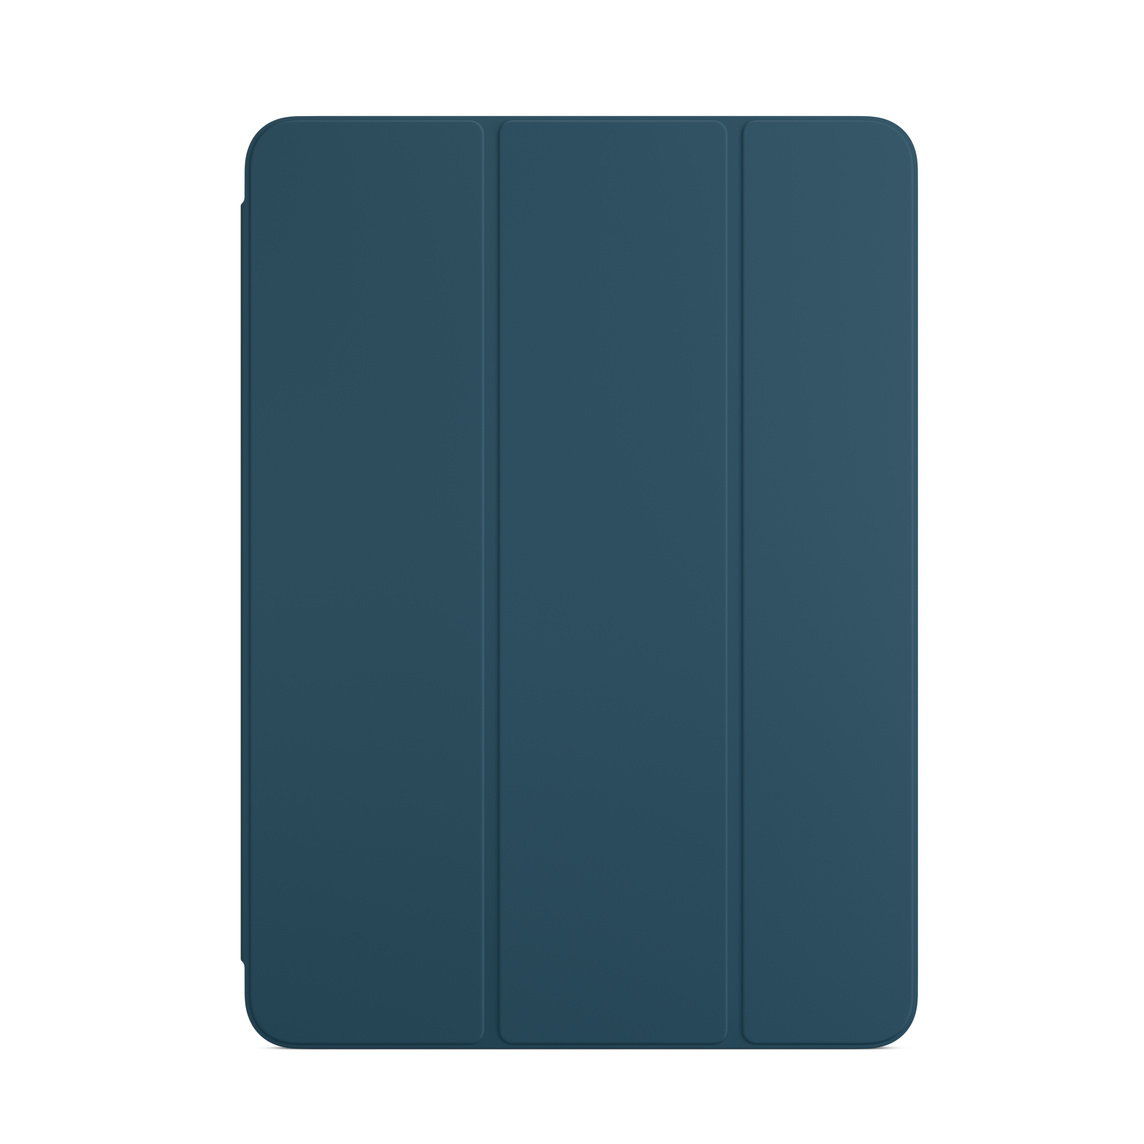 Smart Folio till iPad Air i oceanblått.